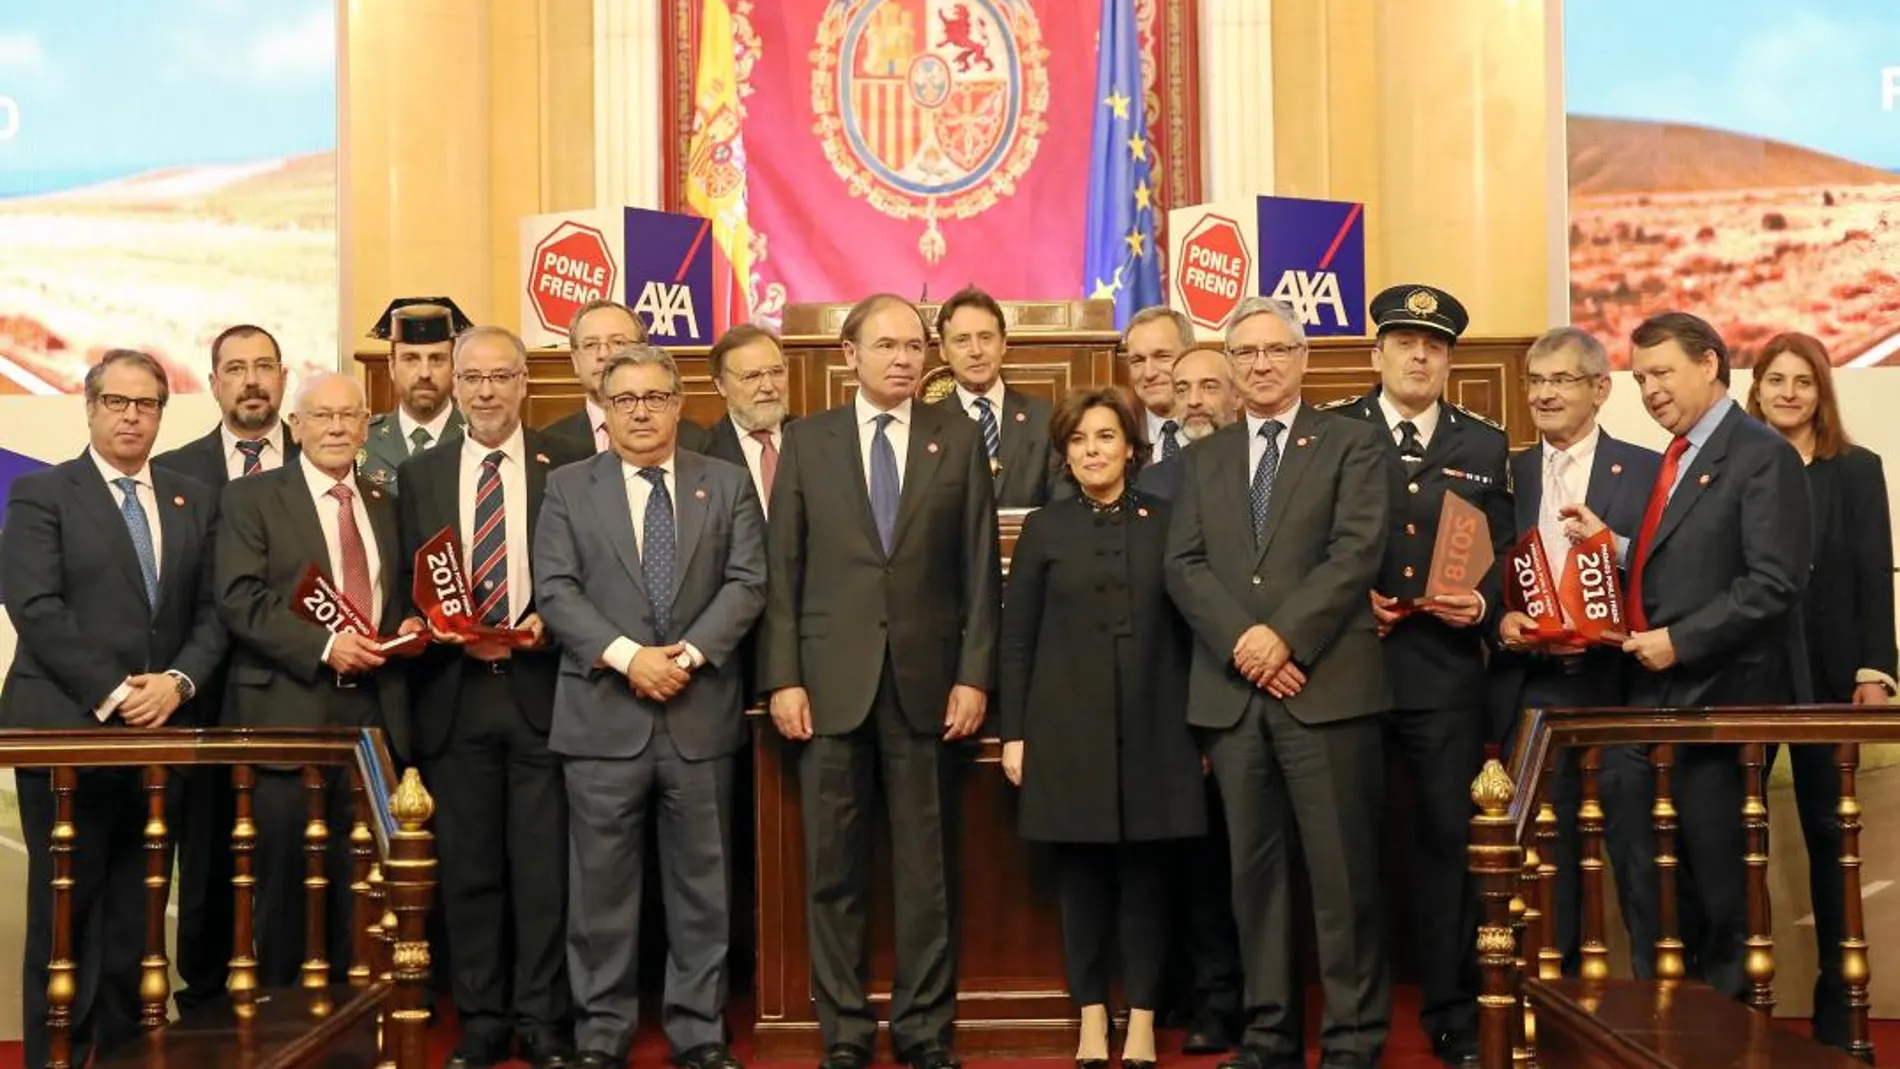 Los premiados de Ponle Freno posaron con García-Escudero, Sáenz de Santamaría y Zoido, entre otras autoridades